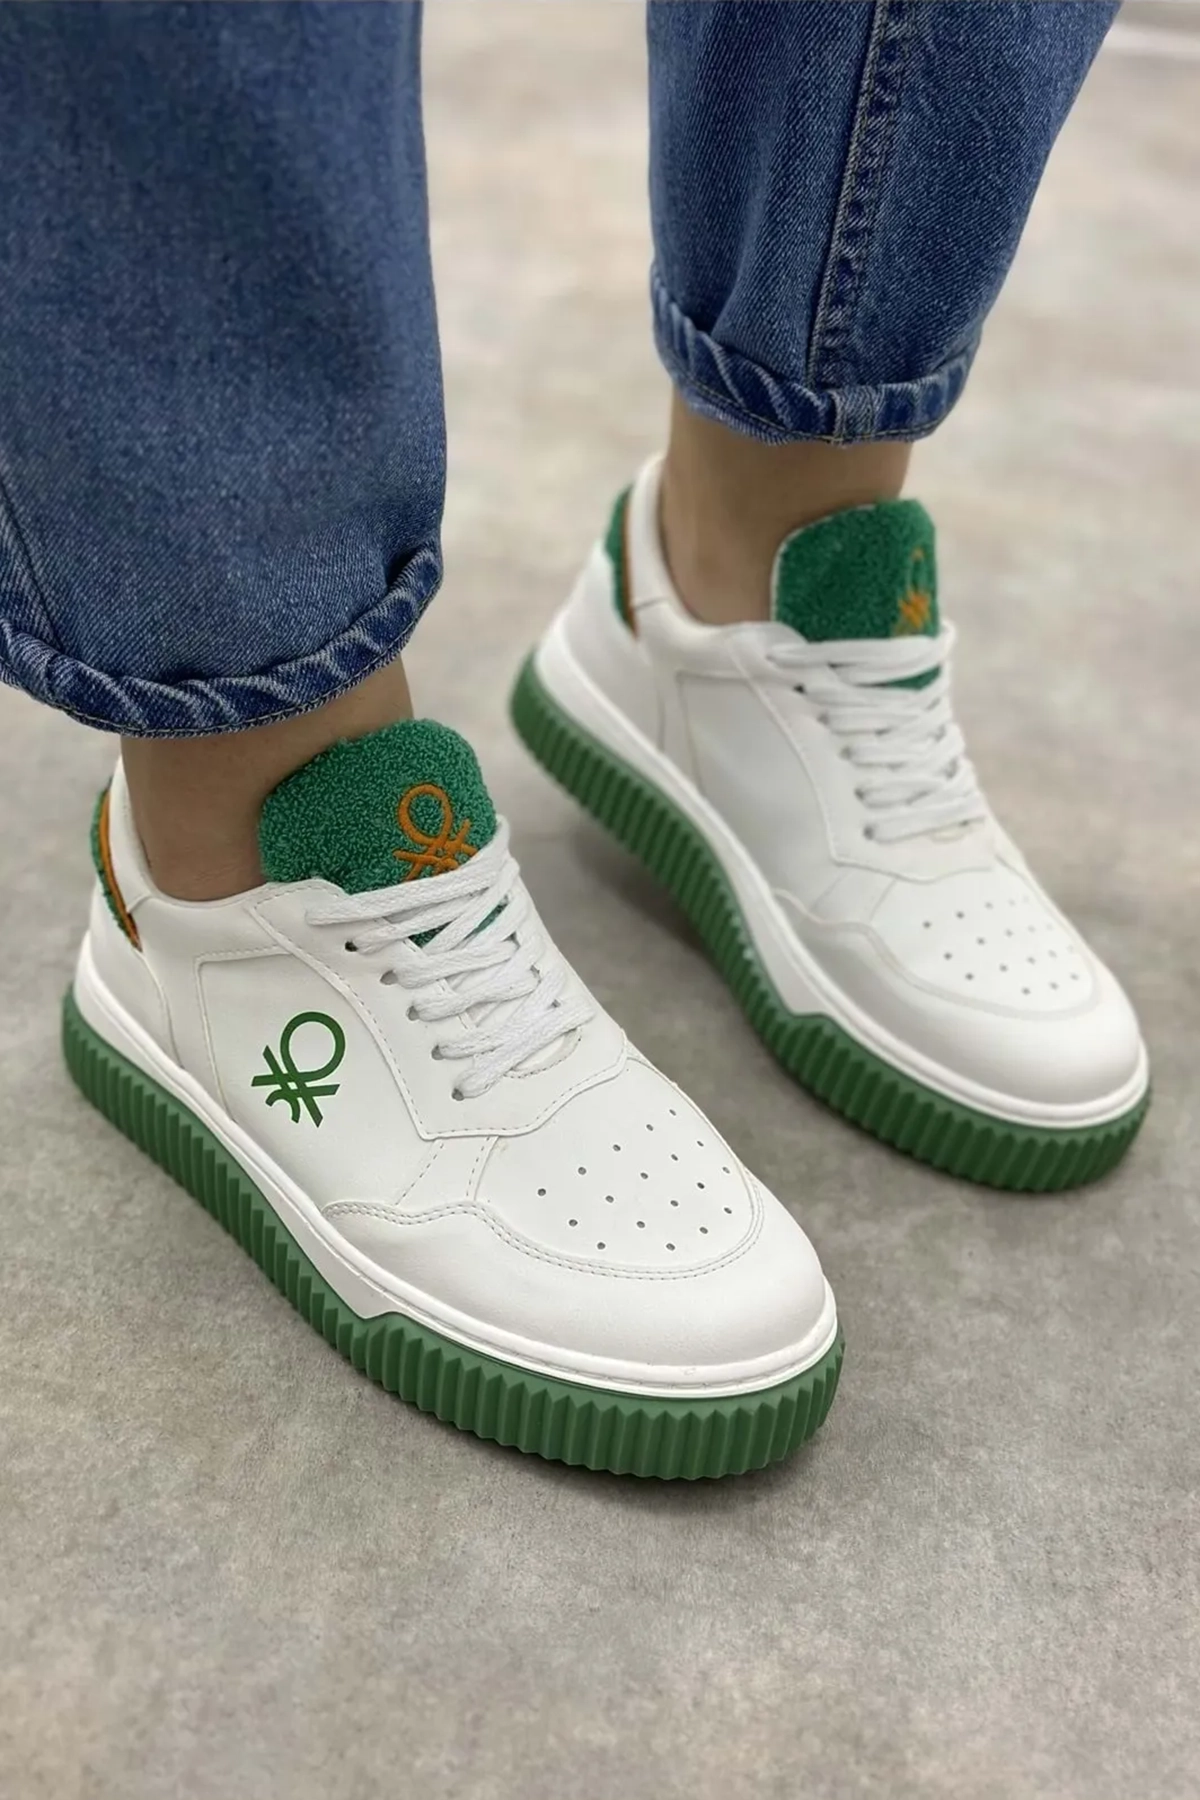 Kadın Spor Ayakkabı BN-31202-Beyaz-Yeşil